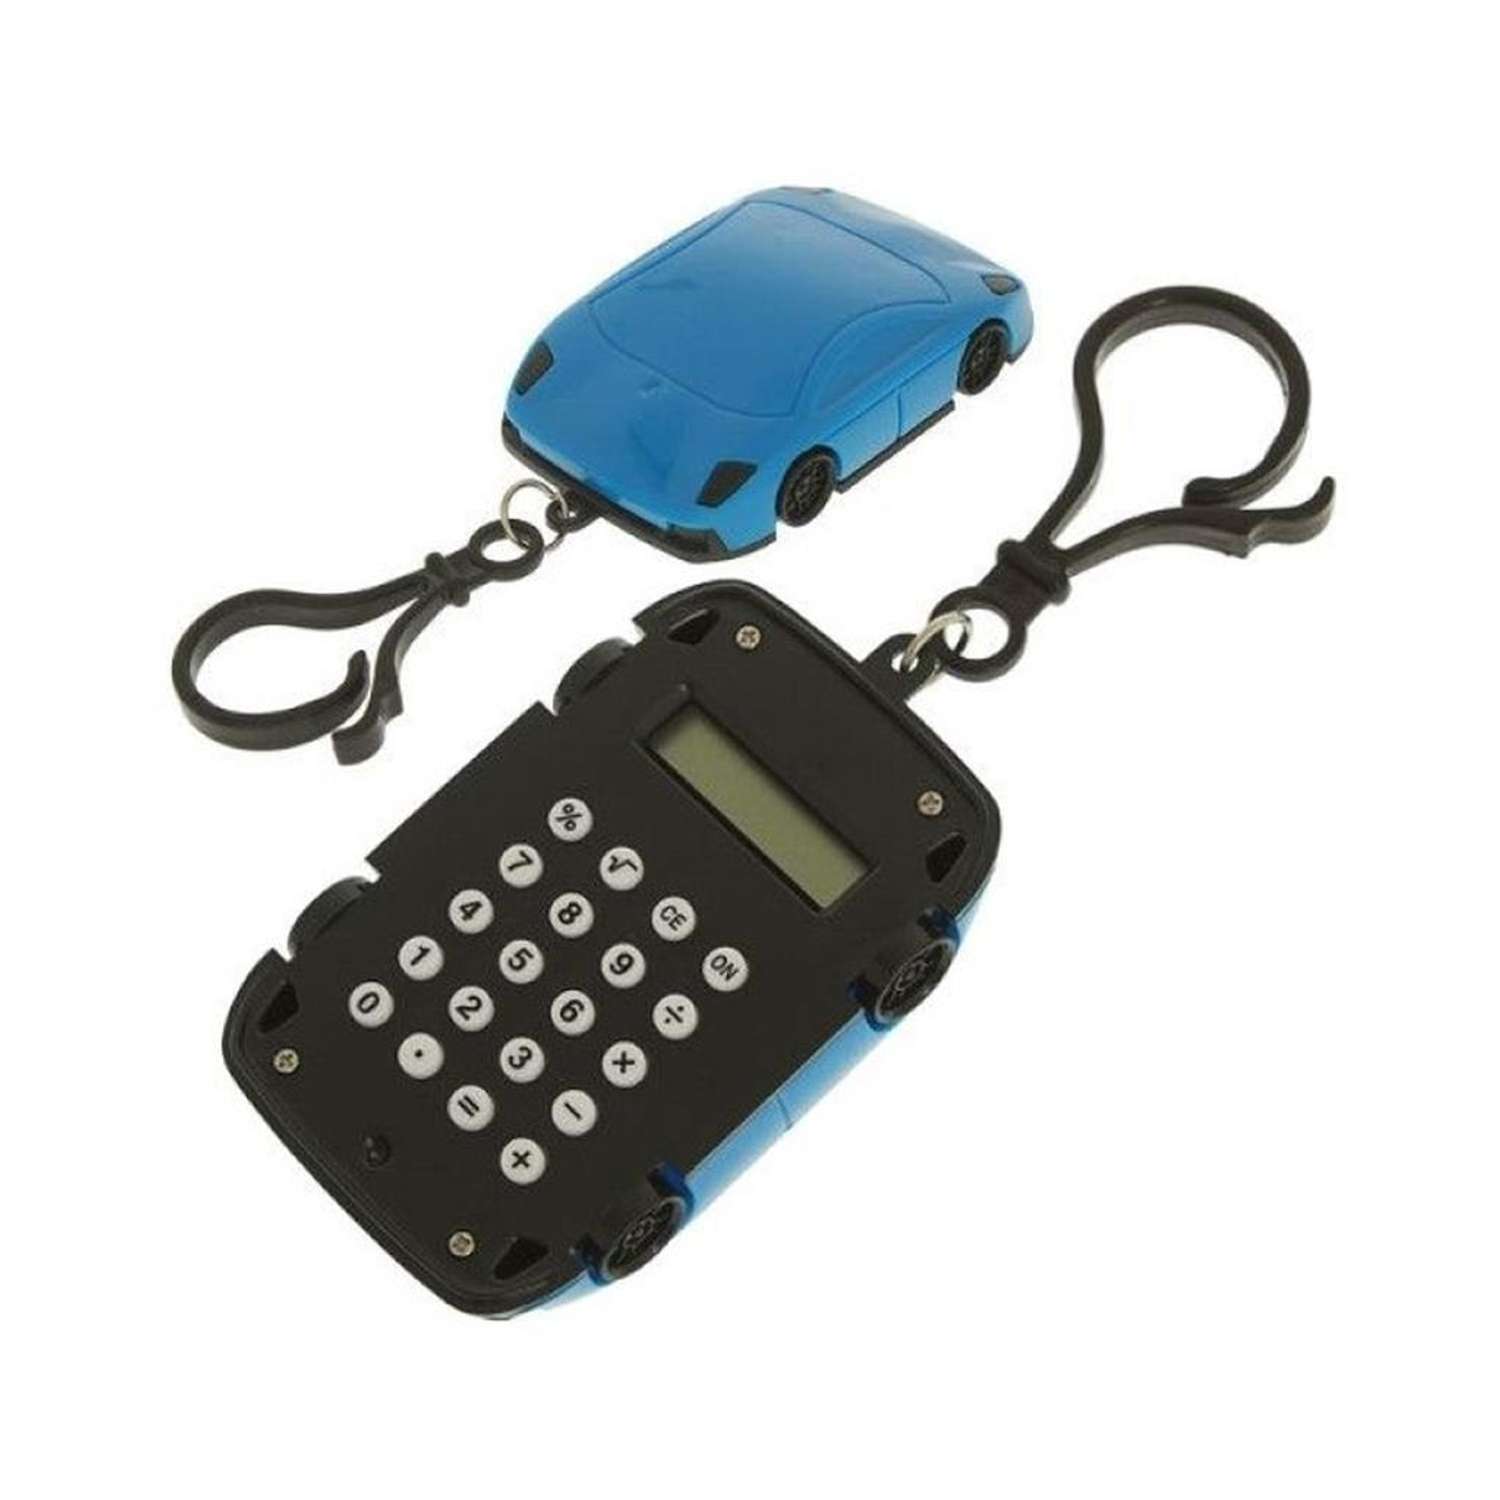 Брелок-калькулятор Uniglodis 8-разрядный машинка синий - фото 3